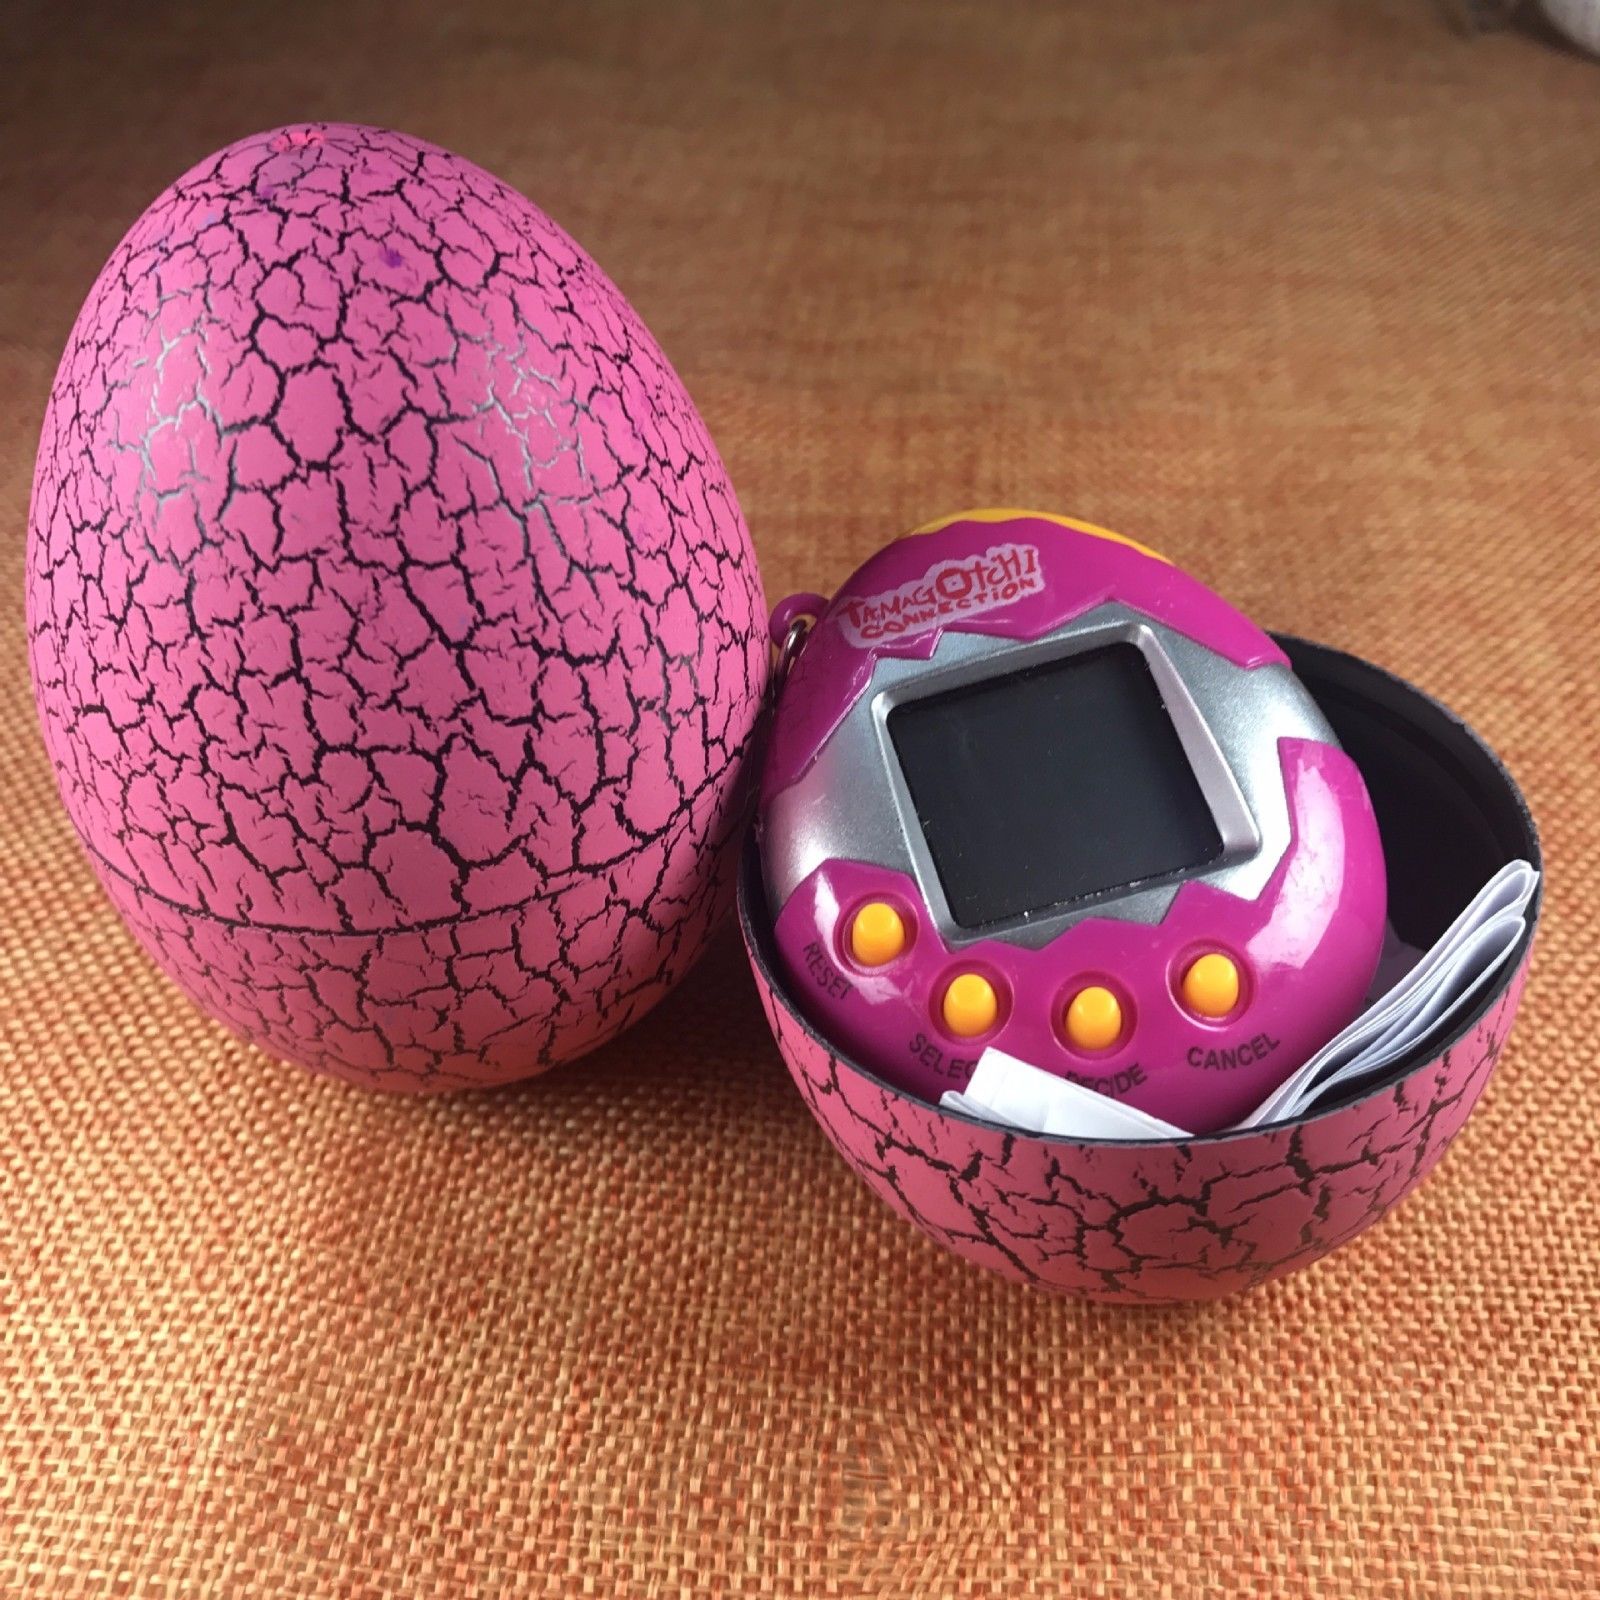 Фото 3 Игрушка электронный питомец Тамагочи в Яйце Динозавра UFT Eggshell Game Pink